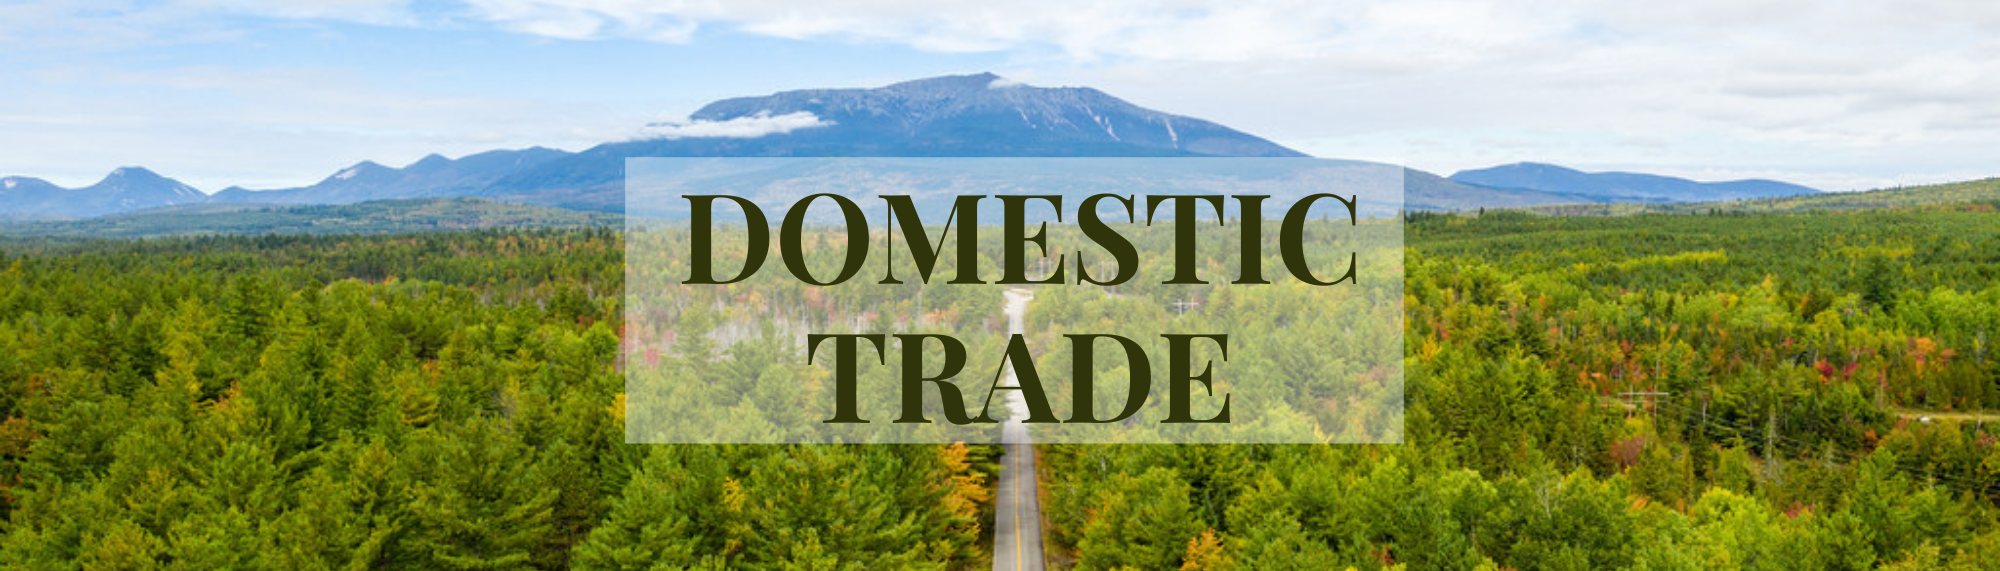 Domestic Trade Title